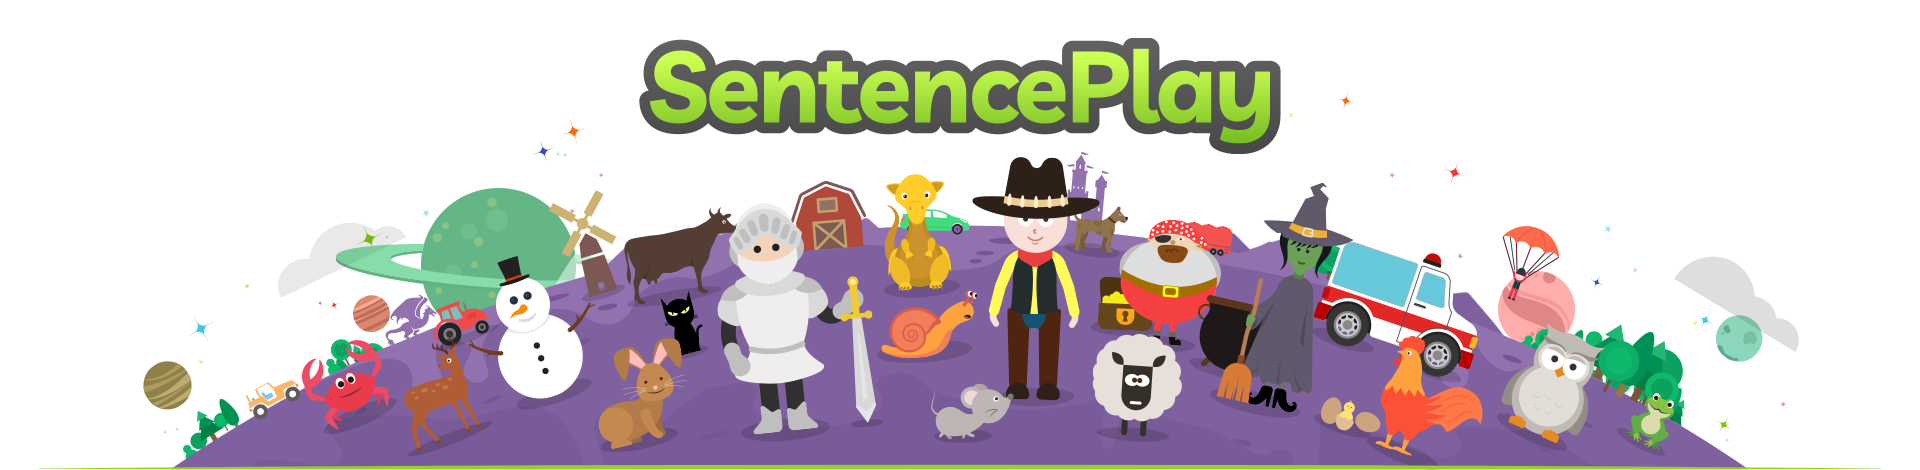 SentencePlay